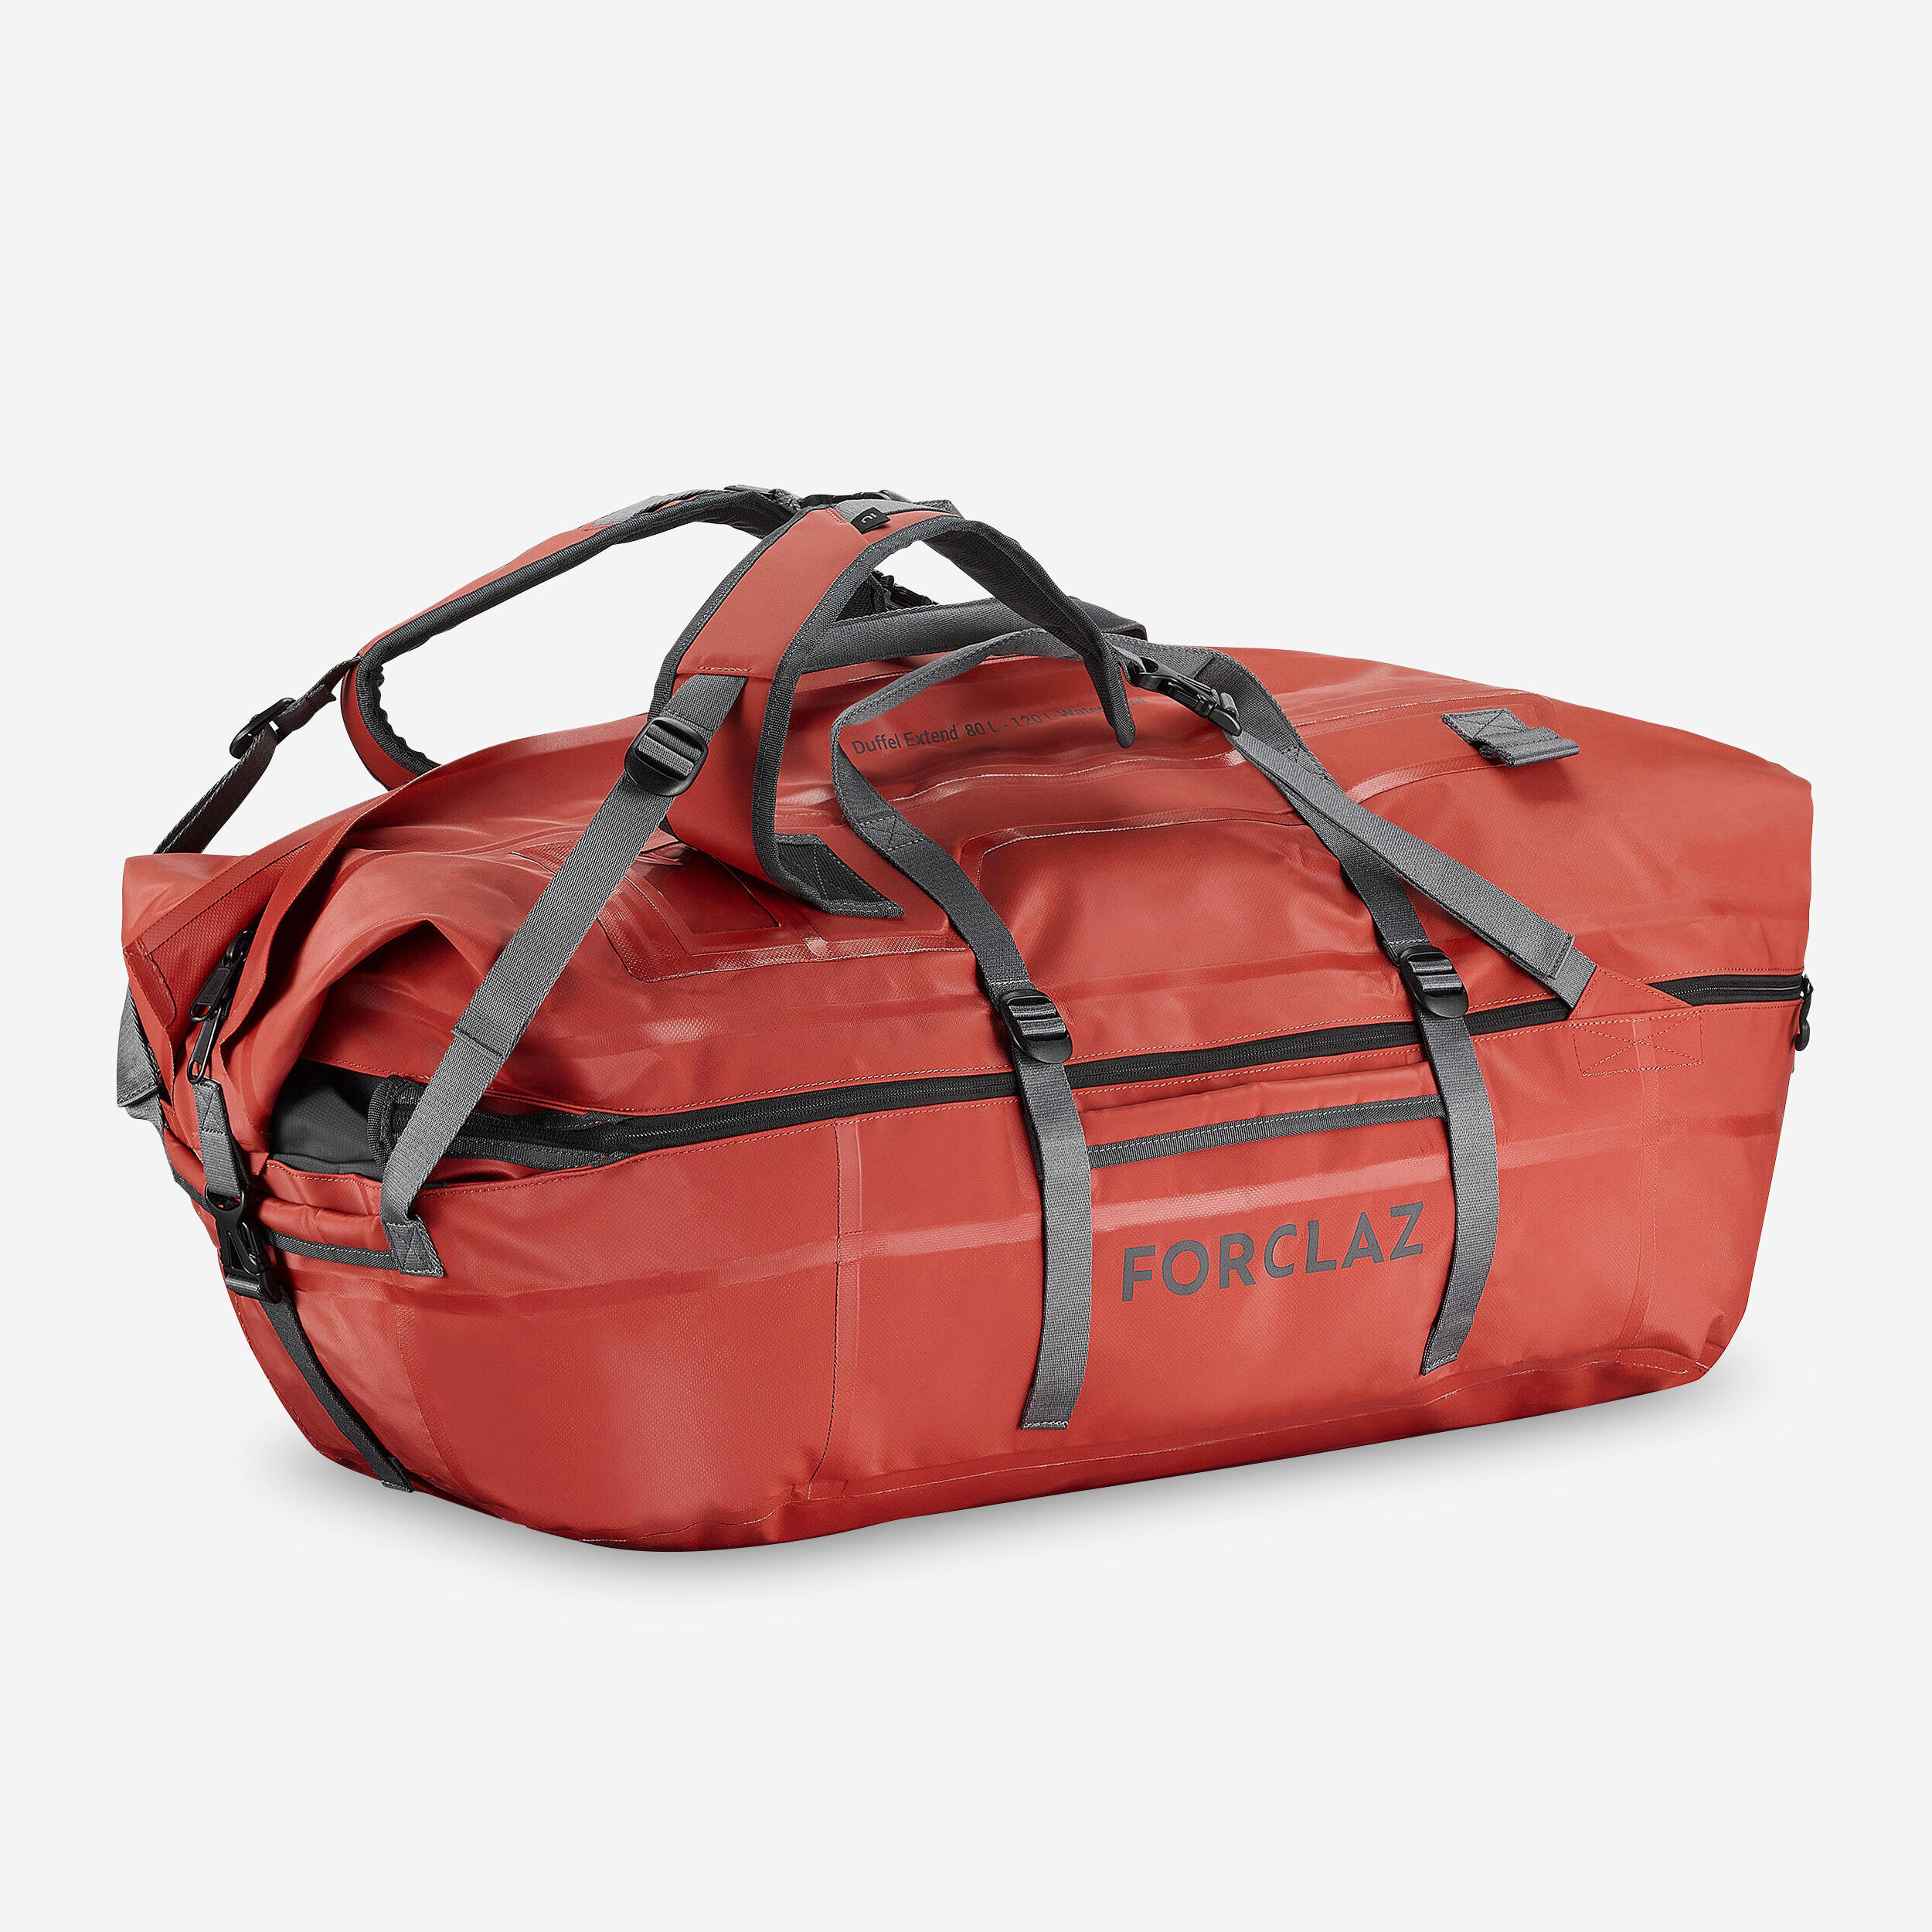 80 L to 120 L Hiking Duffel Bag - 900 Extend